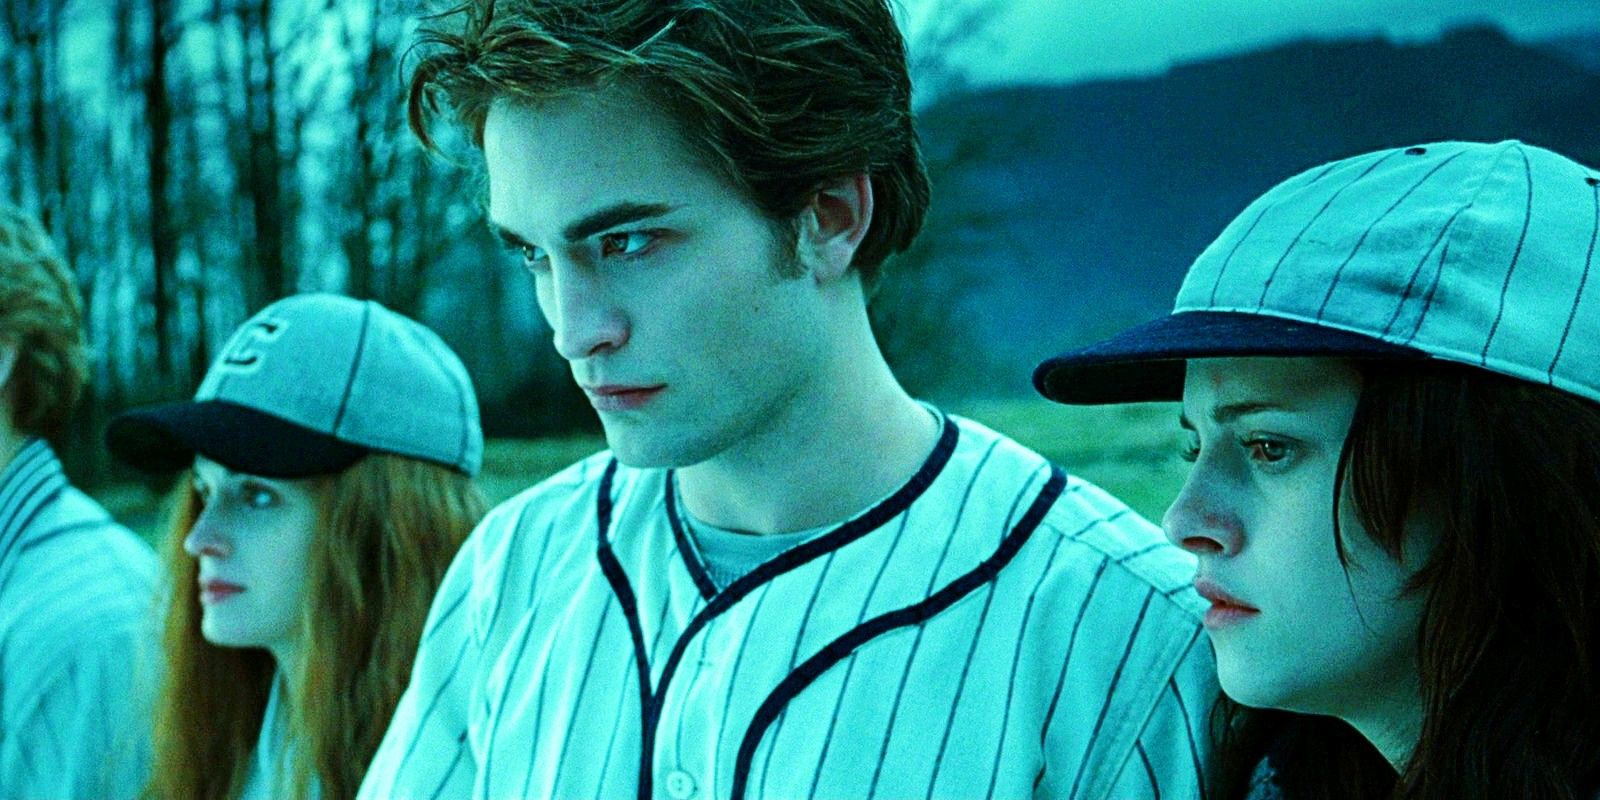 Elizabeth Reaser Robert Pattinson and Kristen Stewart in Twilight